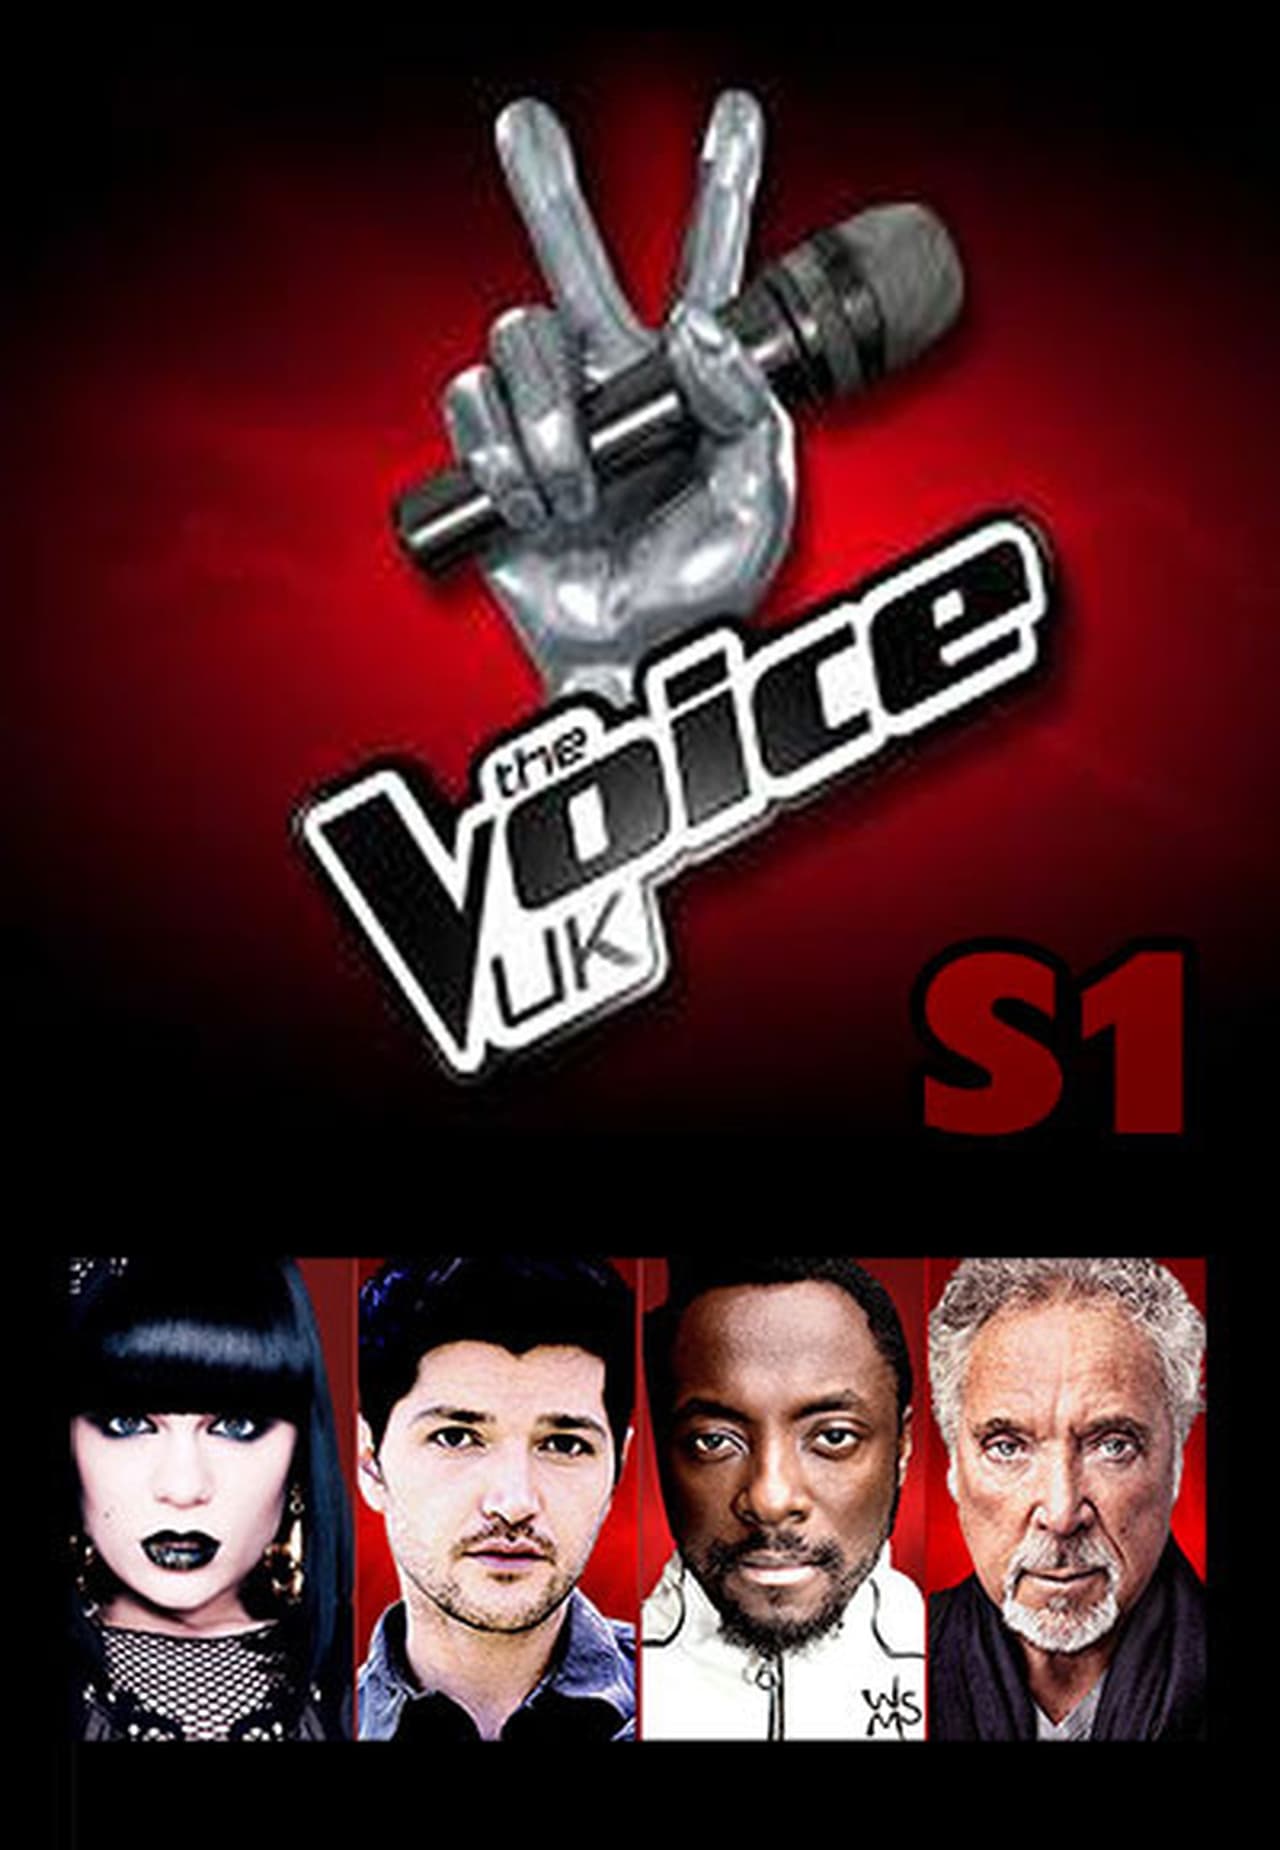 The Voice UK Season 1